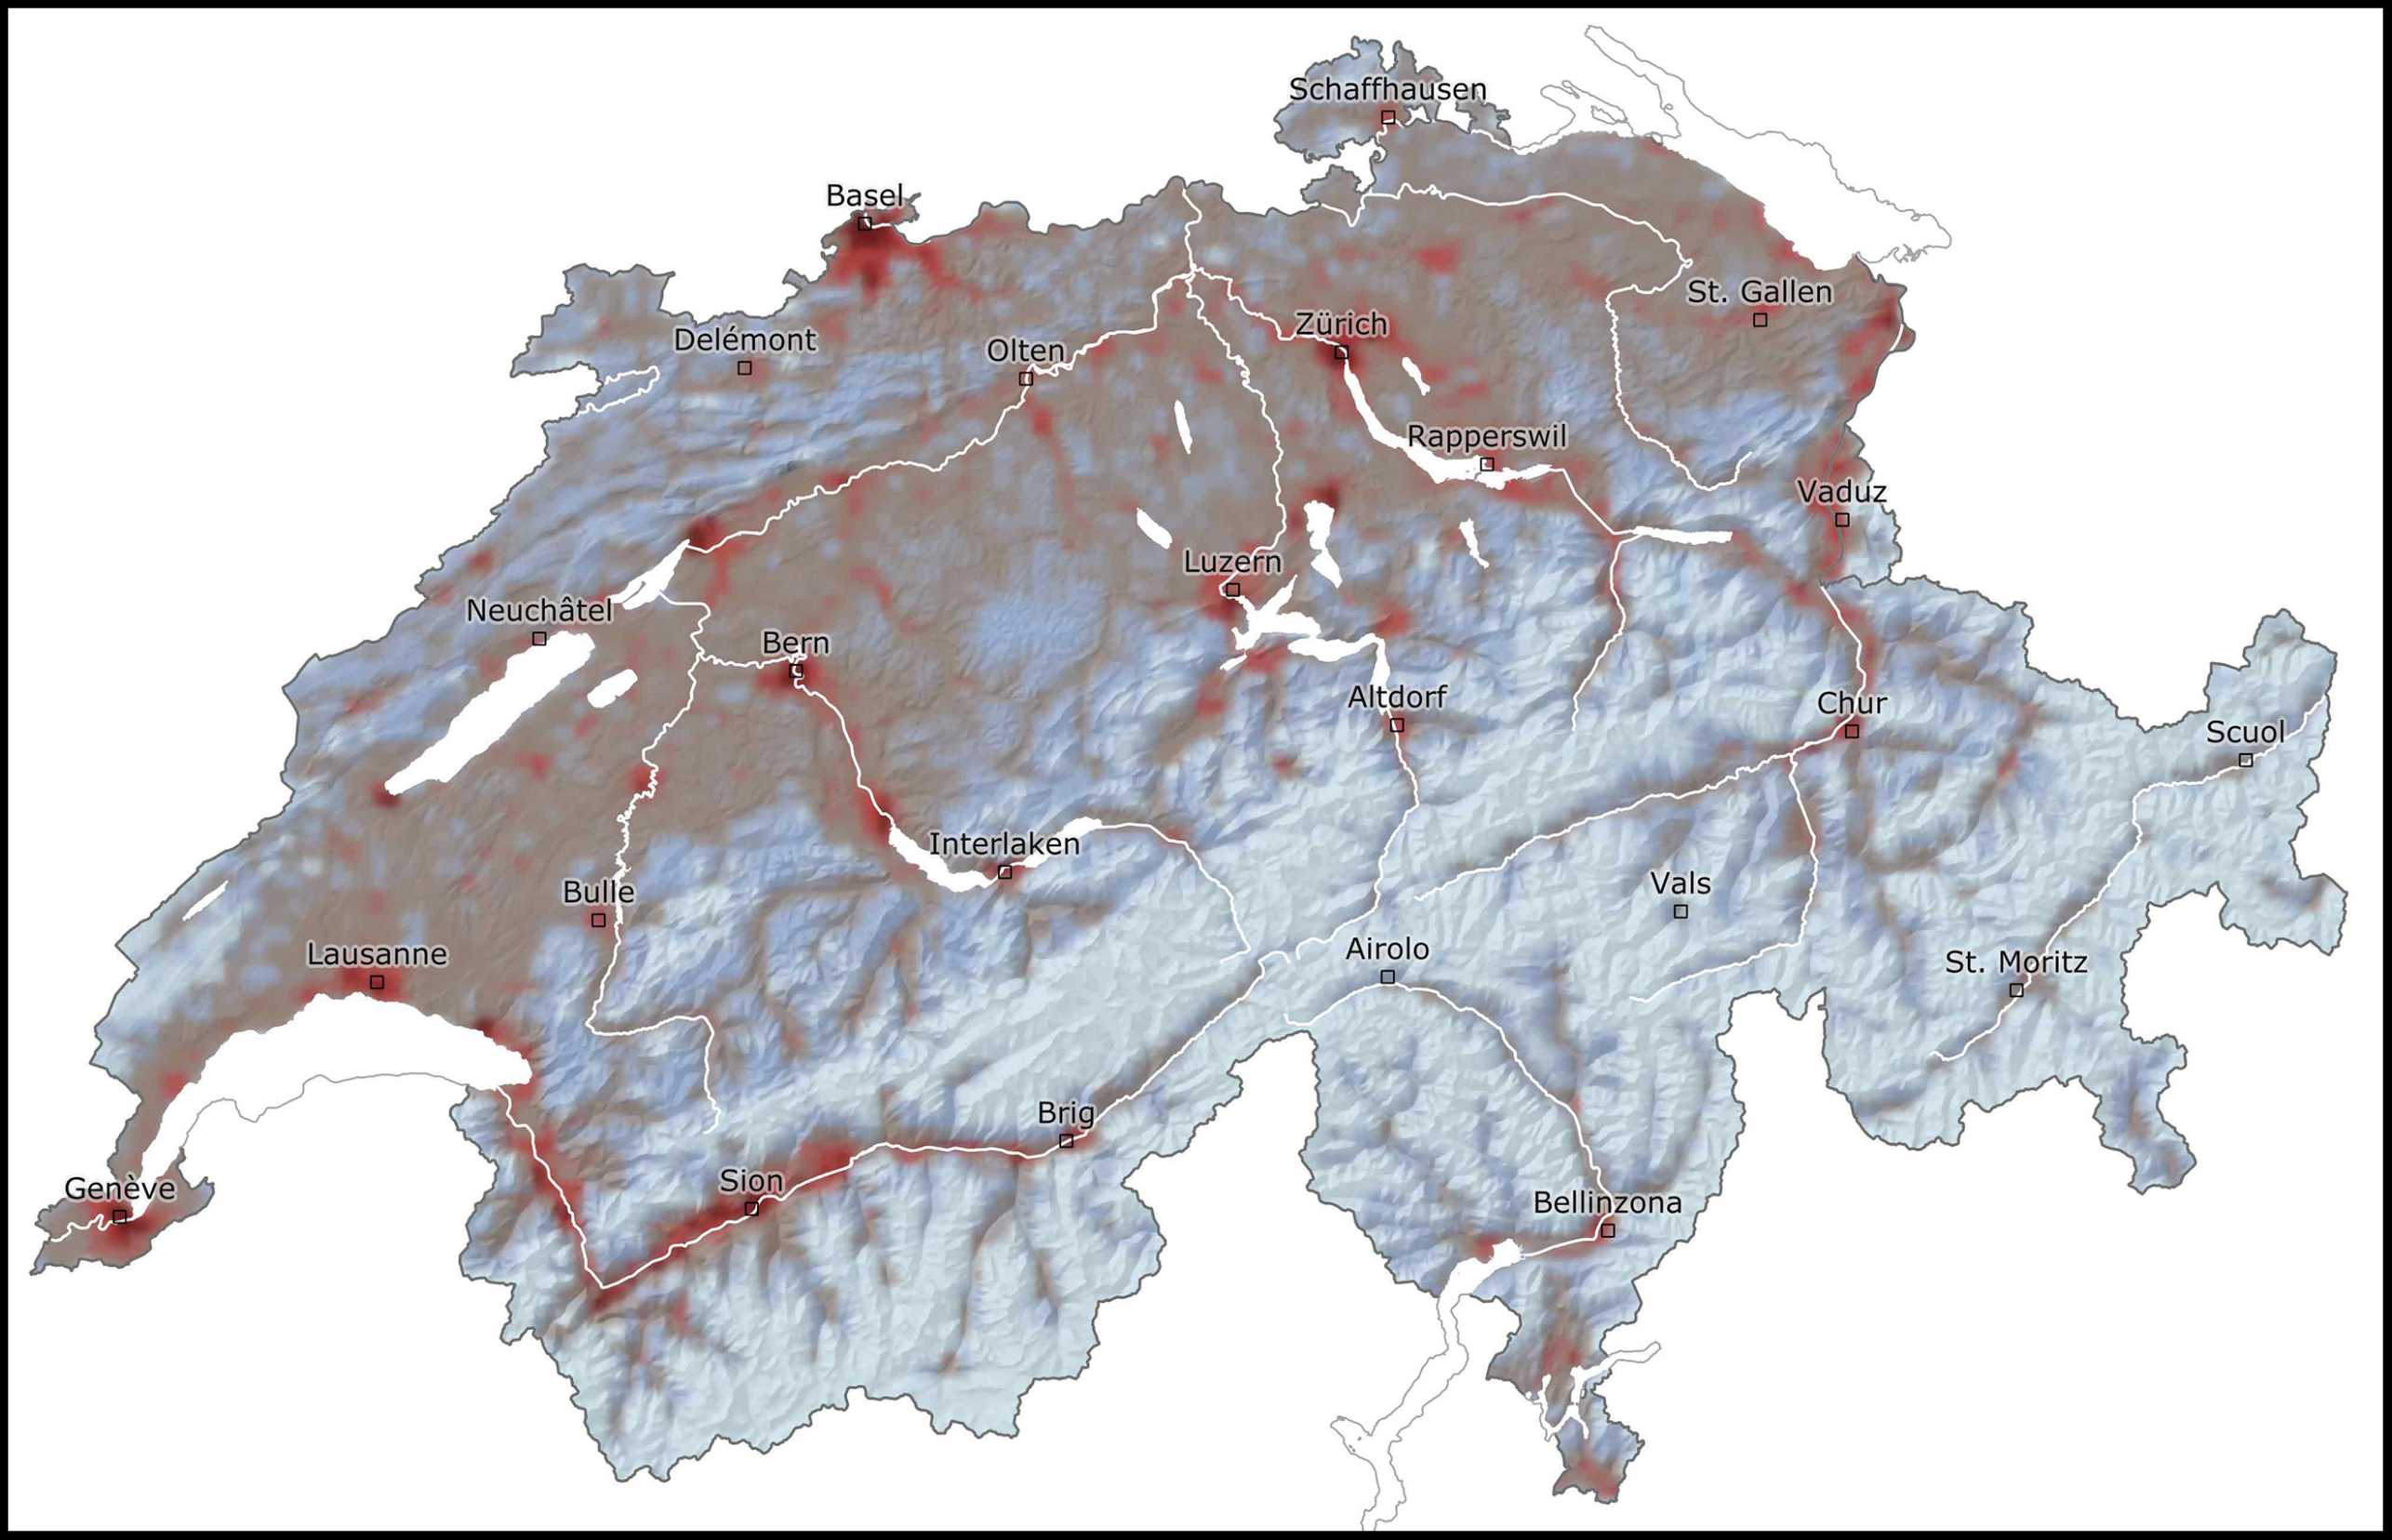 Vergr?sserte Ansicht: Grafik, Erdbebenrisikokarte der Schweiz. Gebiete mit hohem Risiko sind rot eingefärbt, Gebiete mit tiefen Risiko hellblau.